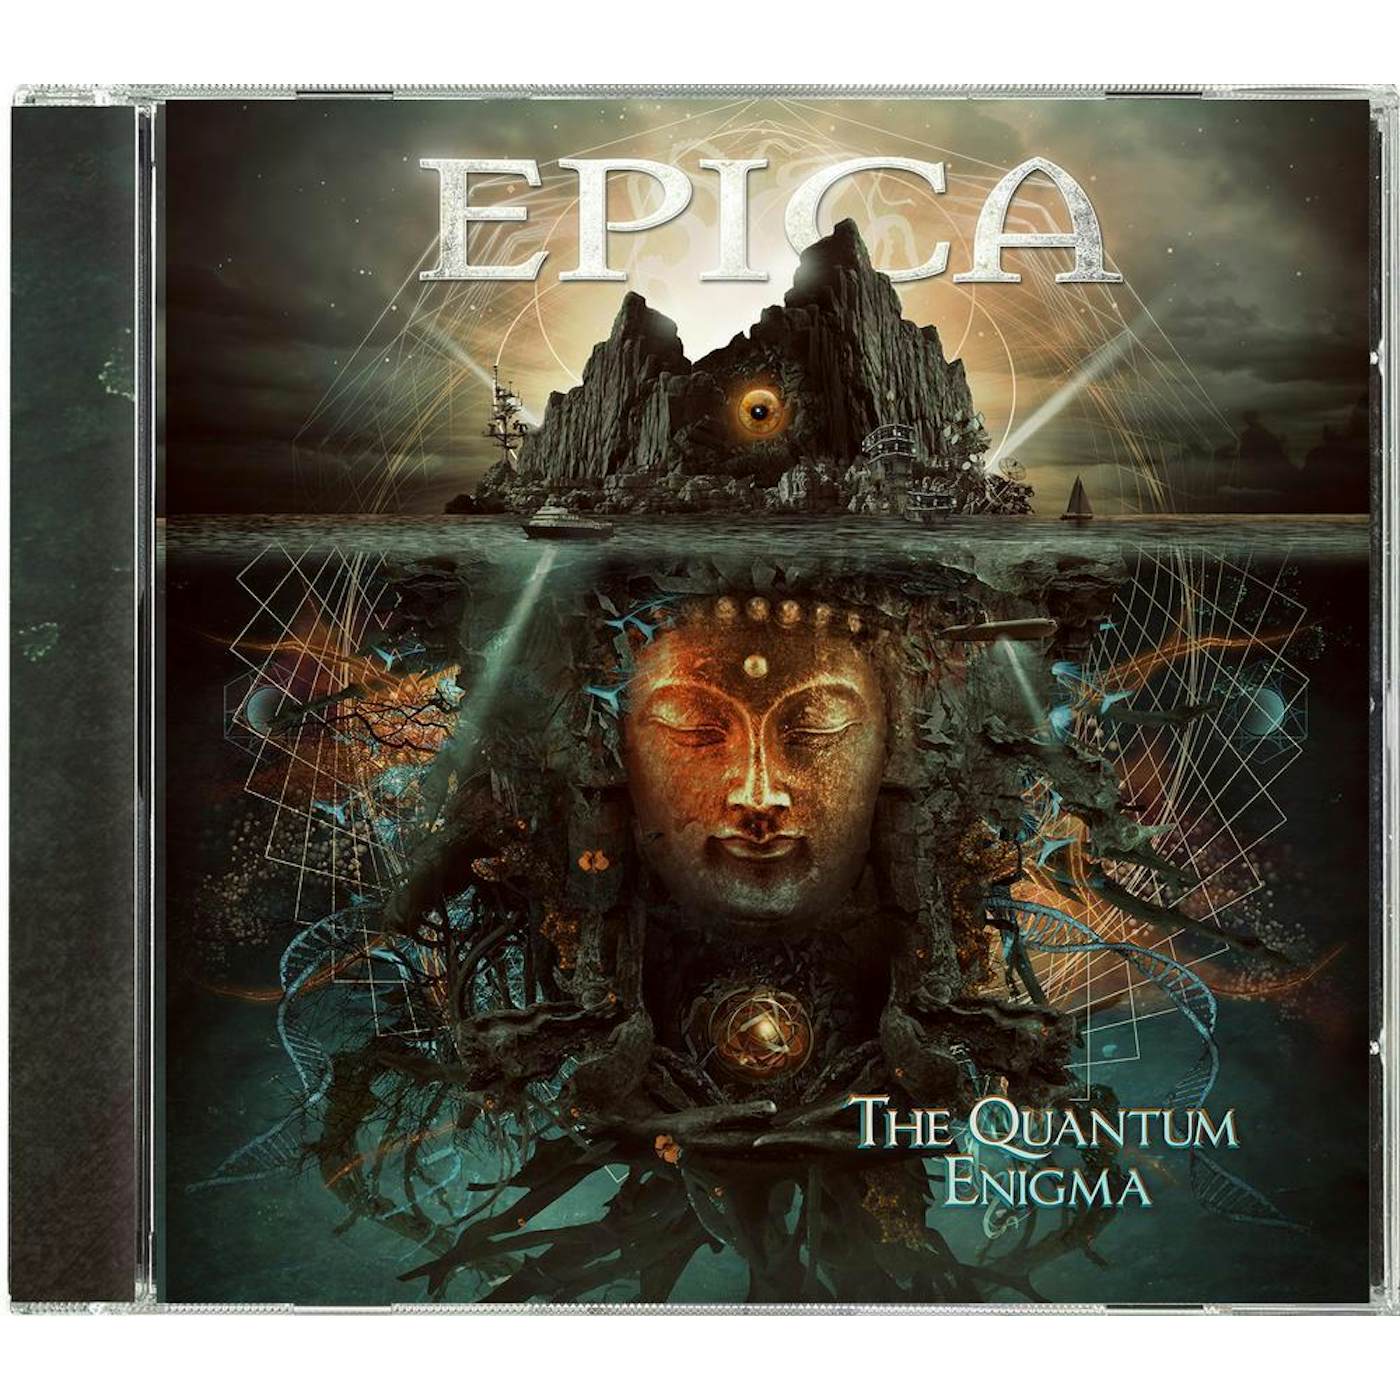 Epica "The Quantum Enigma" CD